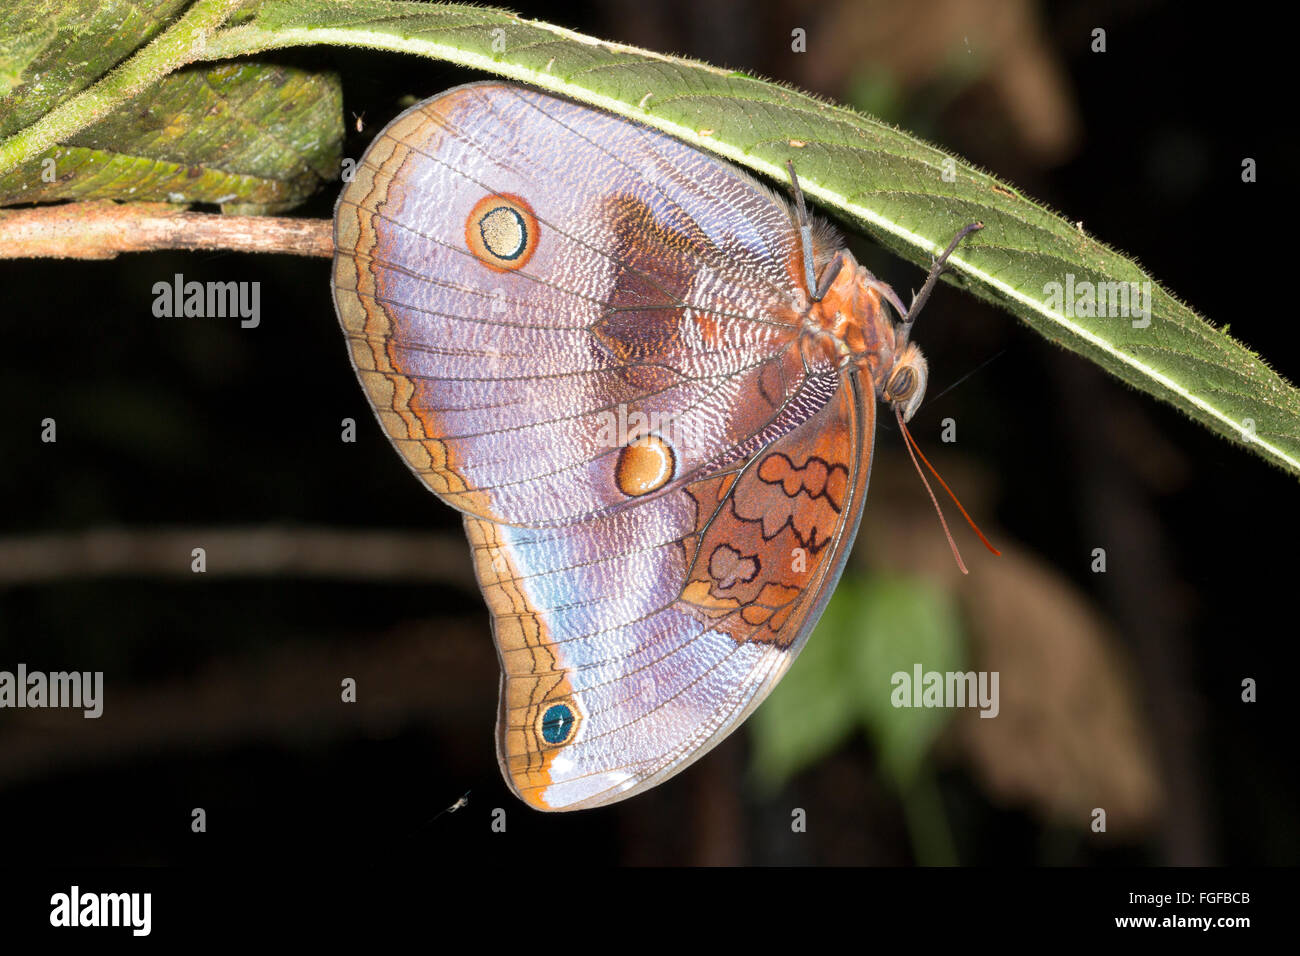 Schmetterling, Catoblepia Xanthocles, Familie Brassolidae Schlafplatz Upside-down in den Regenwald Unterwuchs nachts in Ecuador Stockfoto